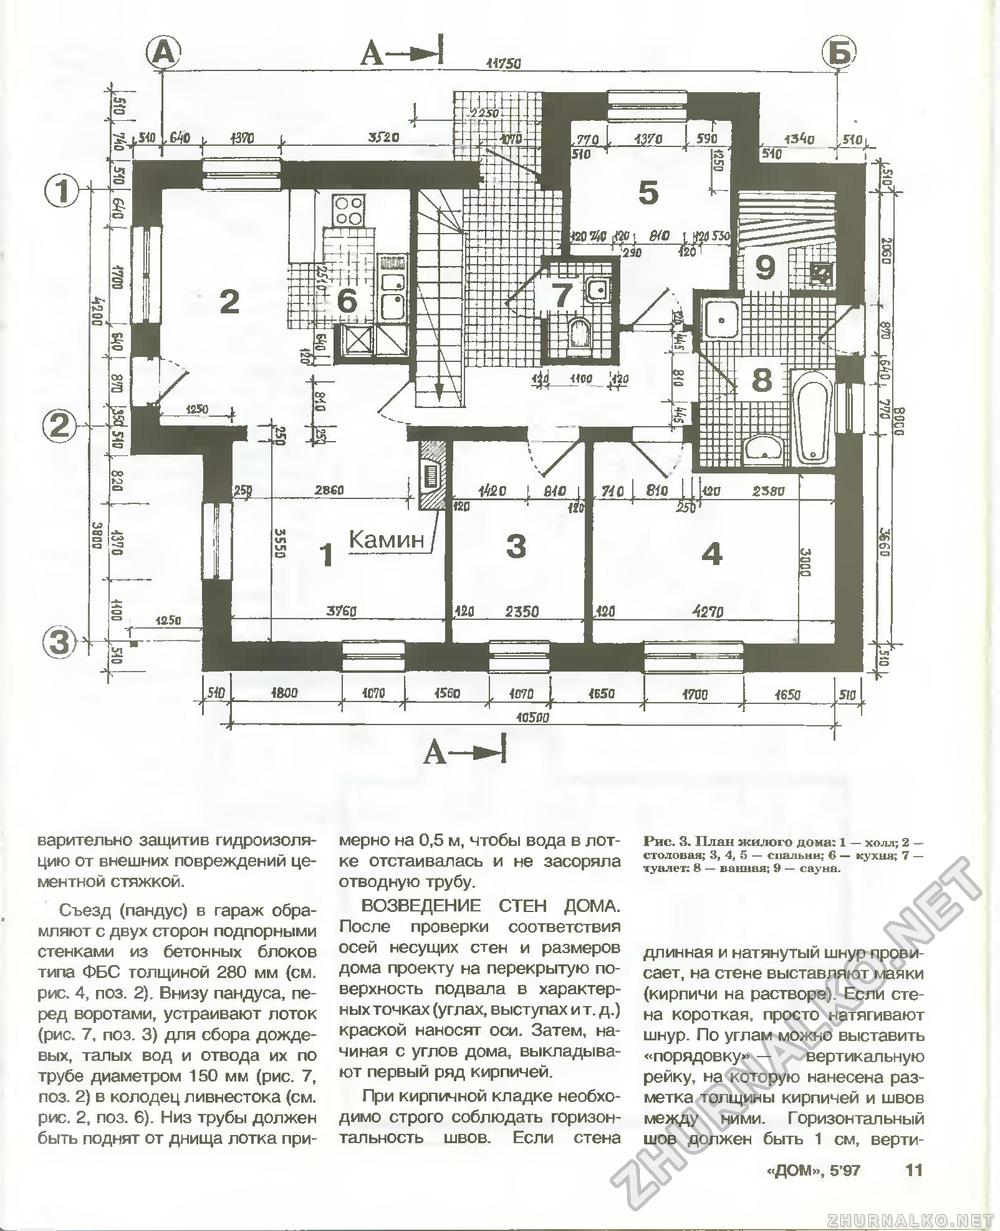 Дом 1997-05, страница 11